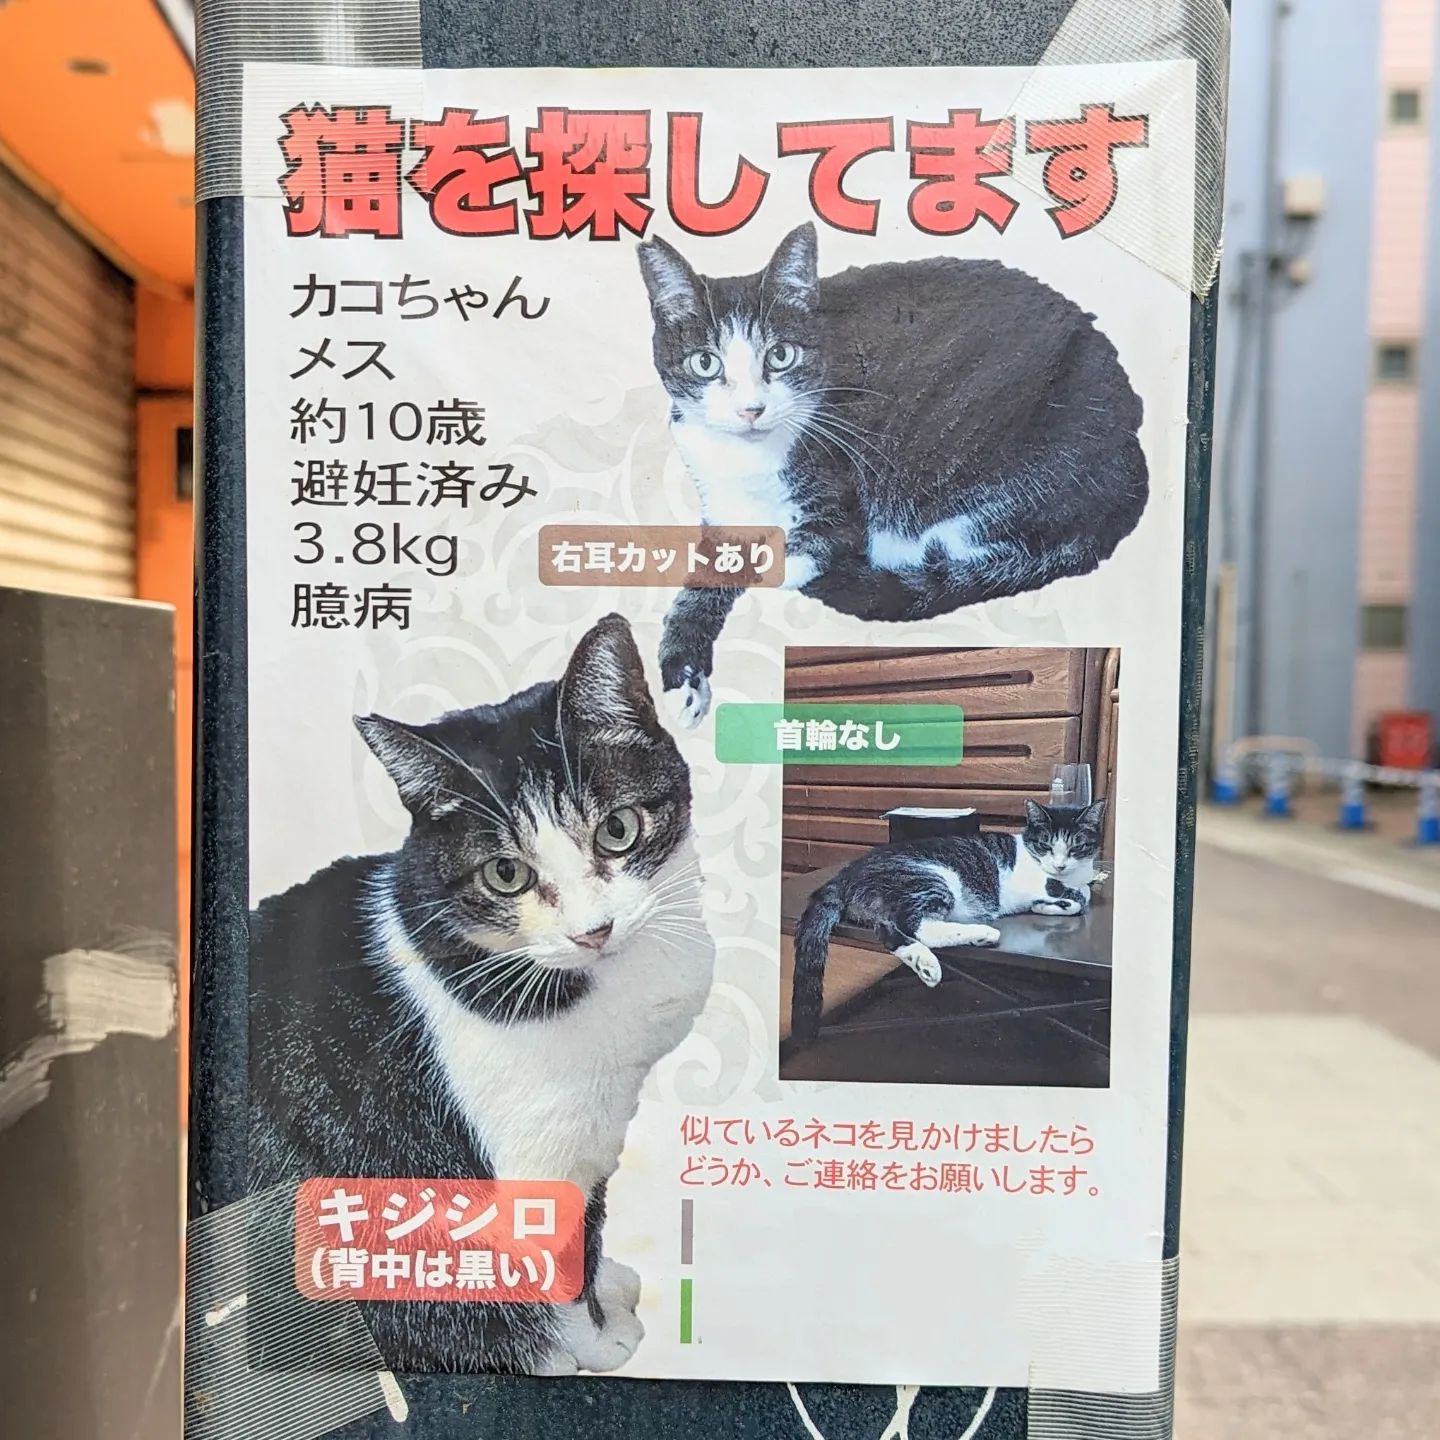 #武蔵小山情報 #迷い猫 キジシロで背中が黒い猫のカコさんが迷子になっております。右耳にカットあり。カコさんが見つかりますように。【侍猫を応援】「フォロー」＆「いいね」＆「保存」どうぞよろしくお願いします！【侍猫をもっと応援】メインサイトもいろいろ見ていただくと侍猫がさらに元気になって武蔵小山グルメをもっと食べ歩けるようになります！（お店の地図＆追加画像あり！）→ https://musashikoyama.samuraicat.jp/ → @musashikoyama.news ※メインサイトへの移動はプロフィールのURLが簡単！【侍猫に連絡】気になるお店やおすすめの新メニュー情報などお気軽にDMください！気まぐれに投稿いたします！もちろんお仕事の依頼も受付中でございます。 #武蔵小山 #西小山 #戸越銀座 #不動前 #碑文谷 #戸越 #中延 #荏原中延 #目黒本町 #下目黒 #品川区 #目黒区 #東京 #musashikoyama #tokyo #猫 #迷い猫探してます #迷い猫さがしてます #迷い猫捜索中 #迷い猫捜索 #猫を探しています #猫探してます #迷子猫